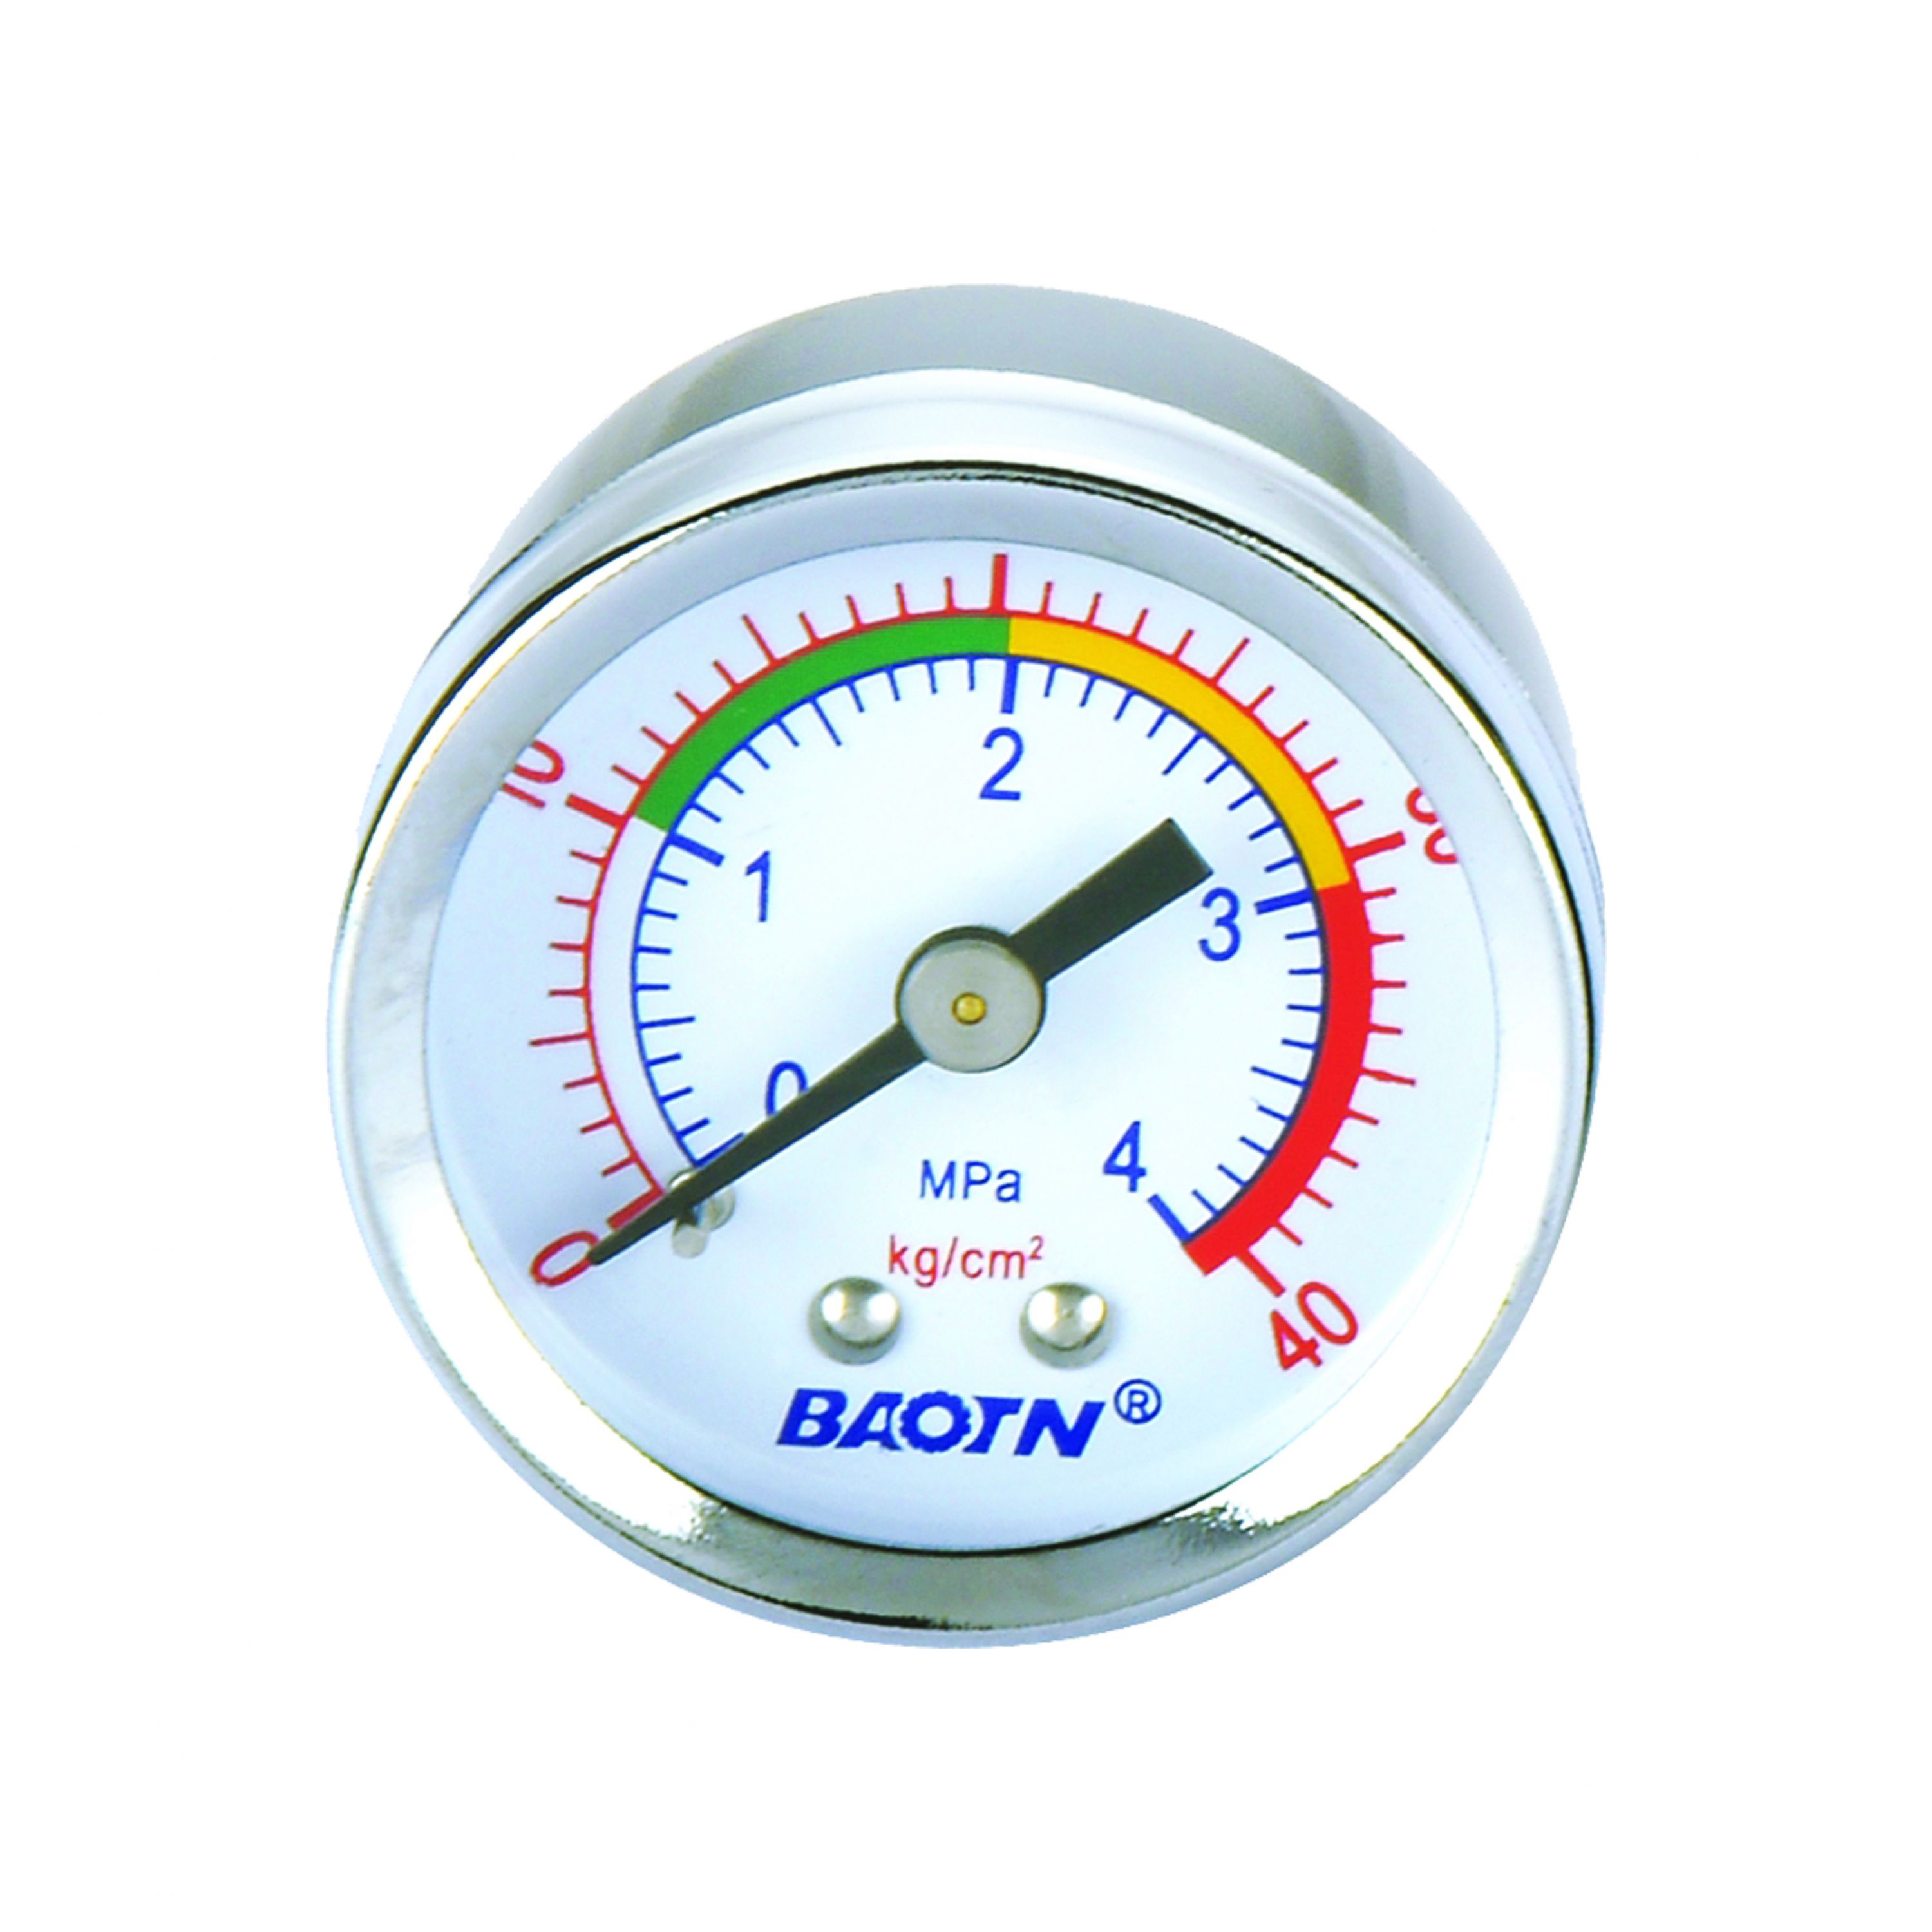 burial pressure gauge image